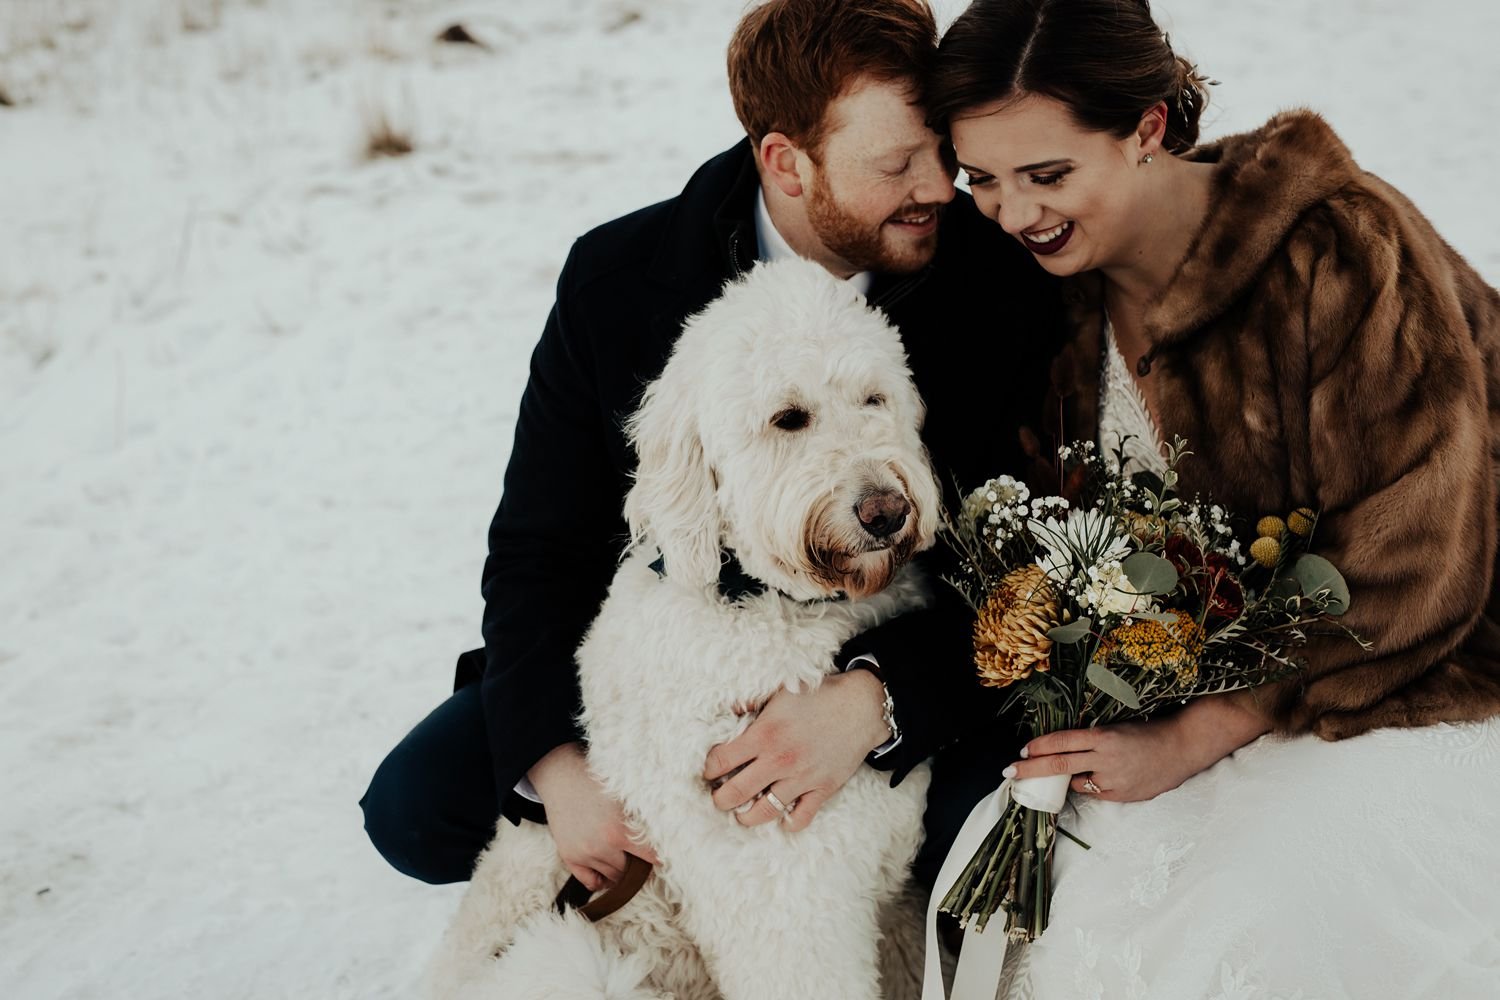 Canmore Winter Wedding | Lisa + Callan